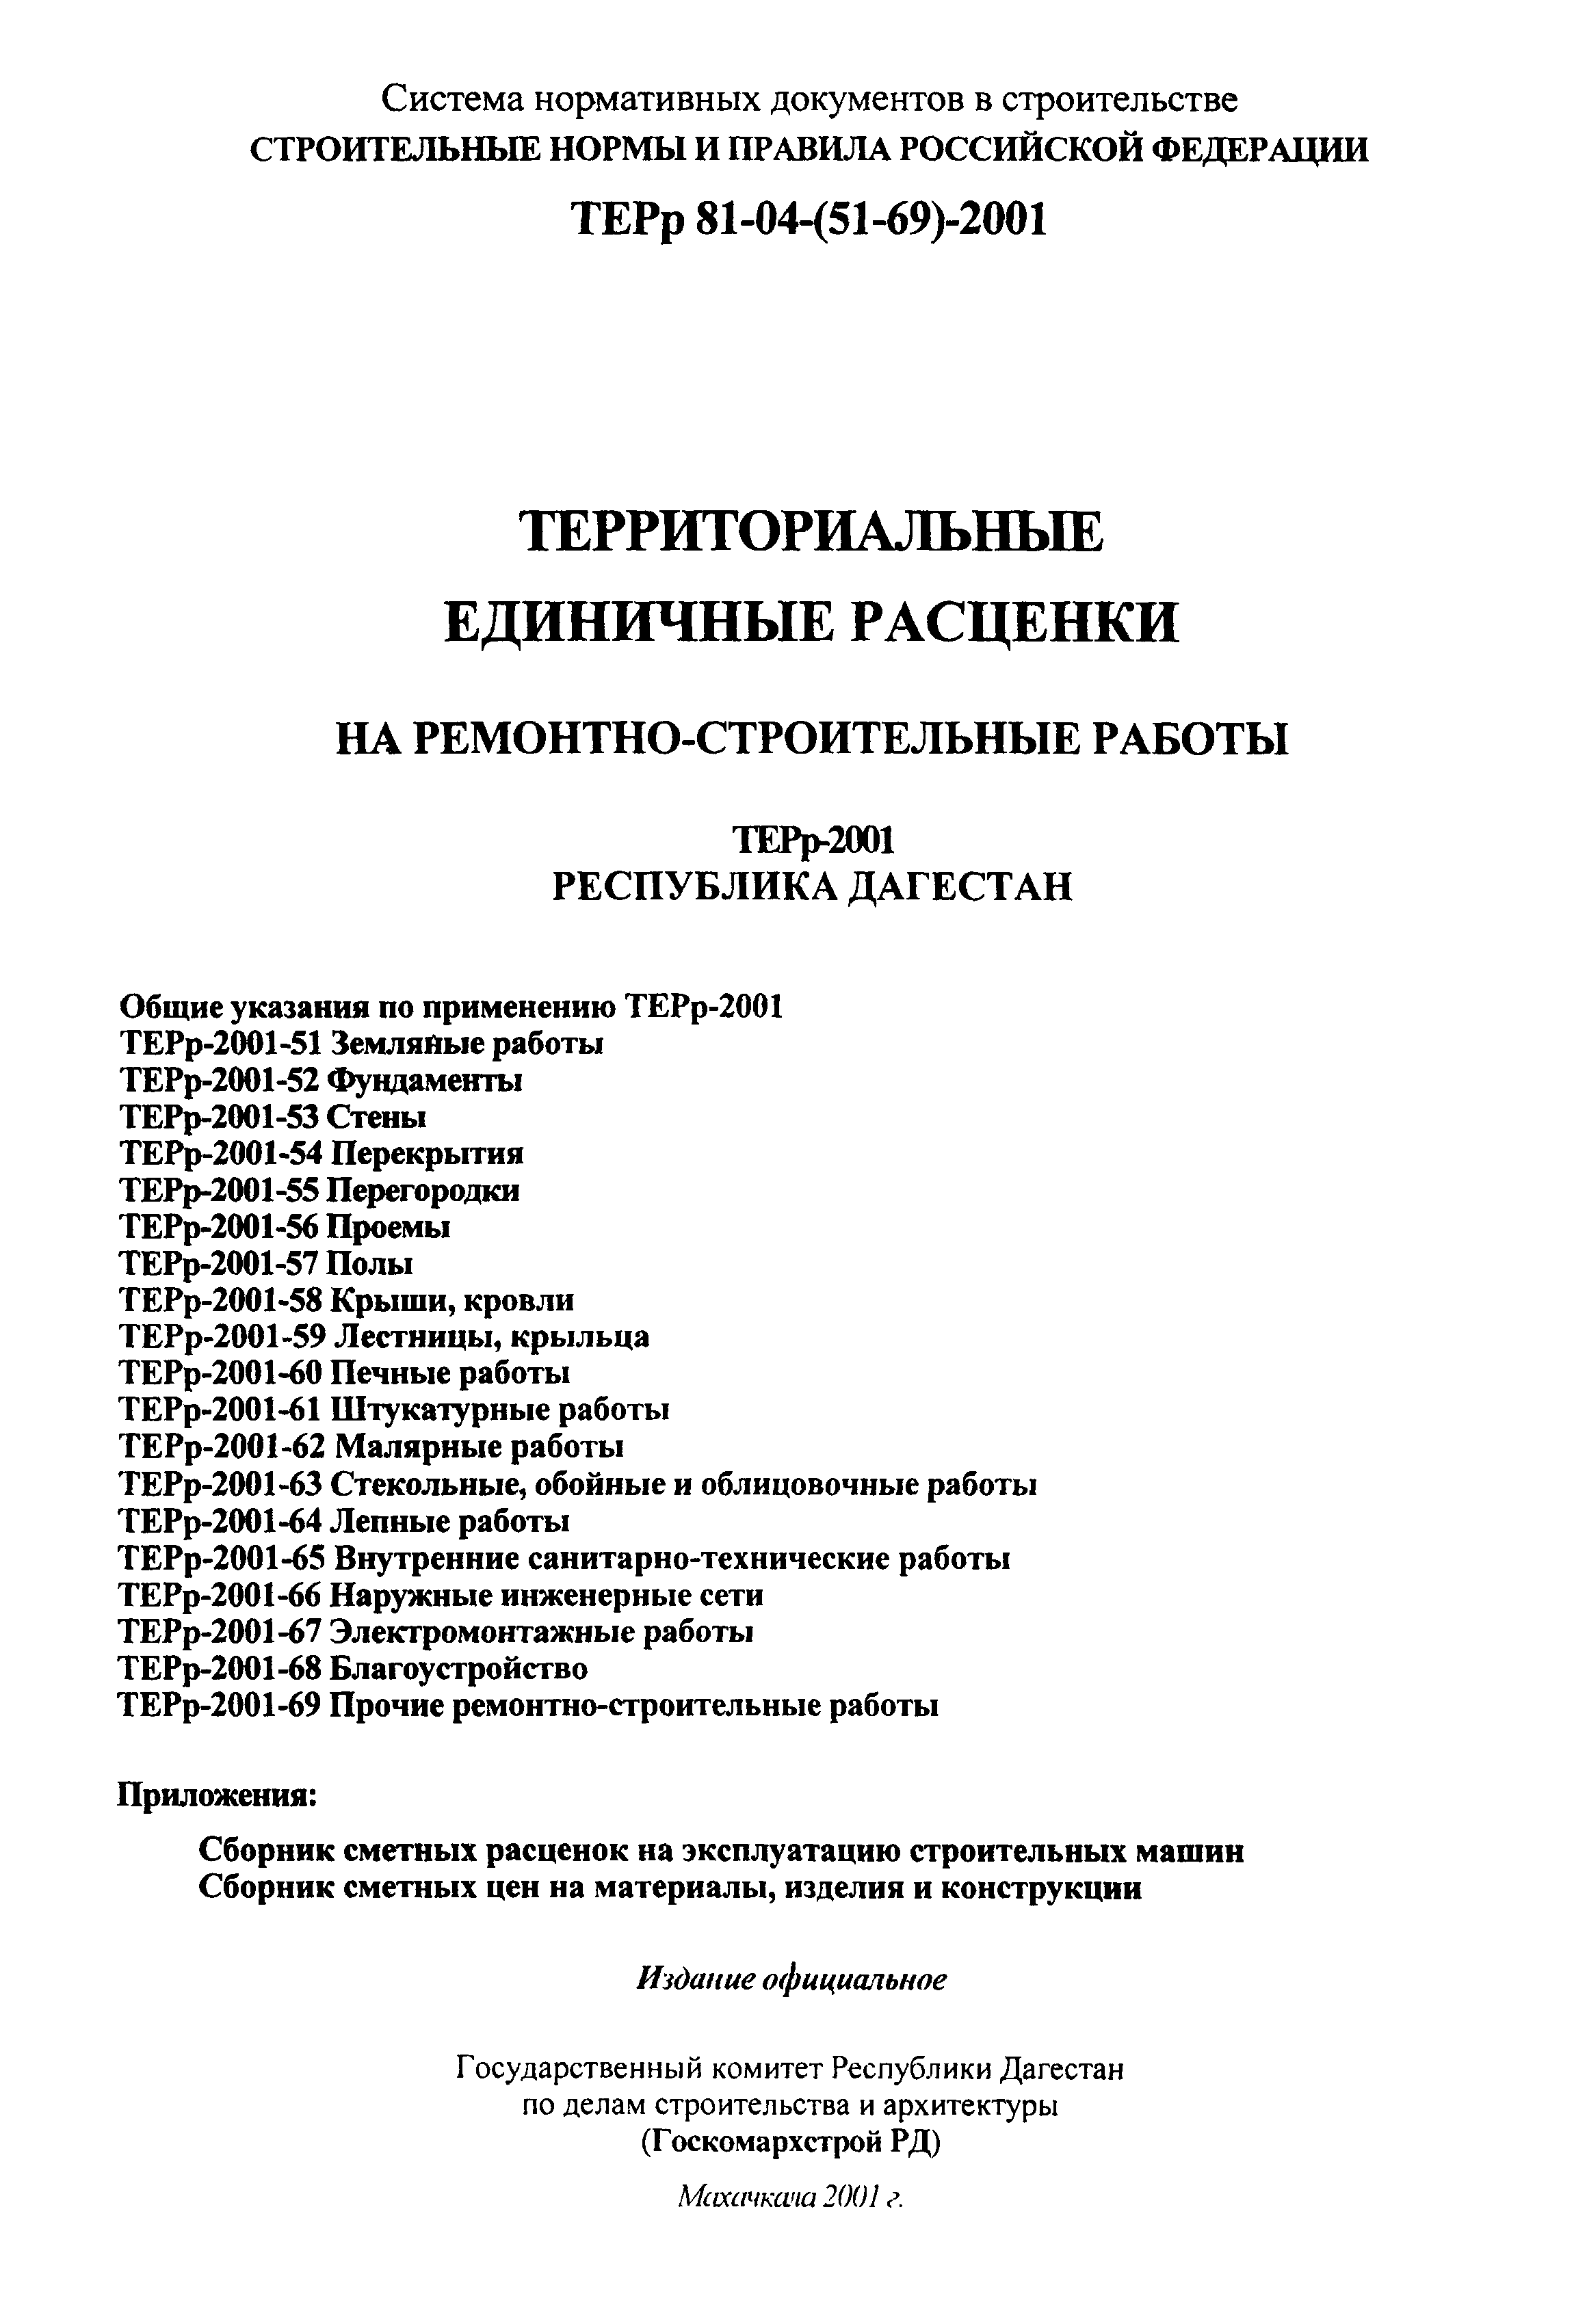 ТЕРр Республика Дагестан 2001-60